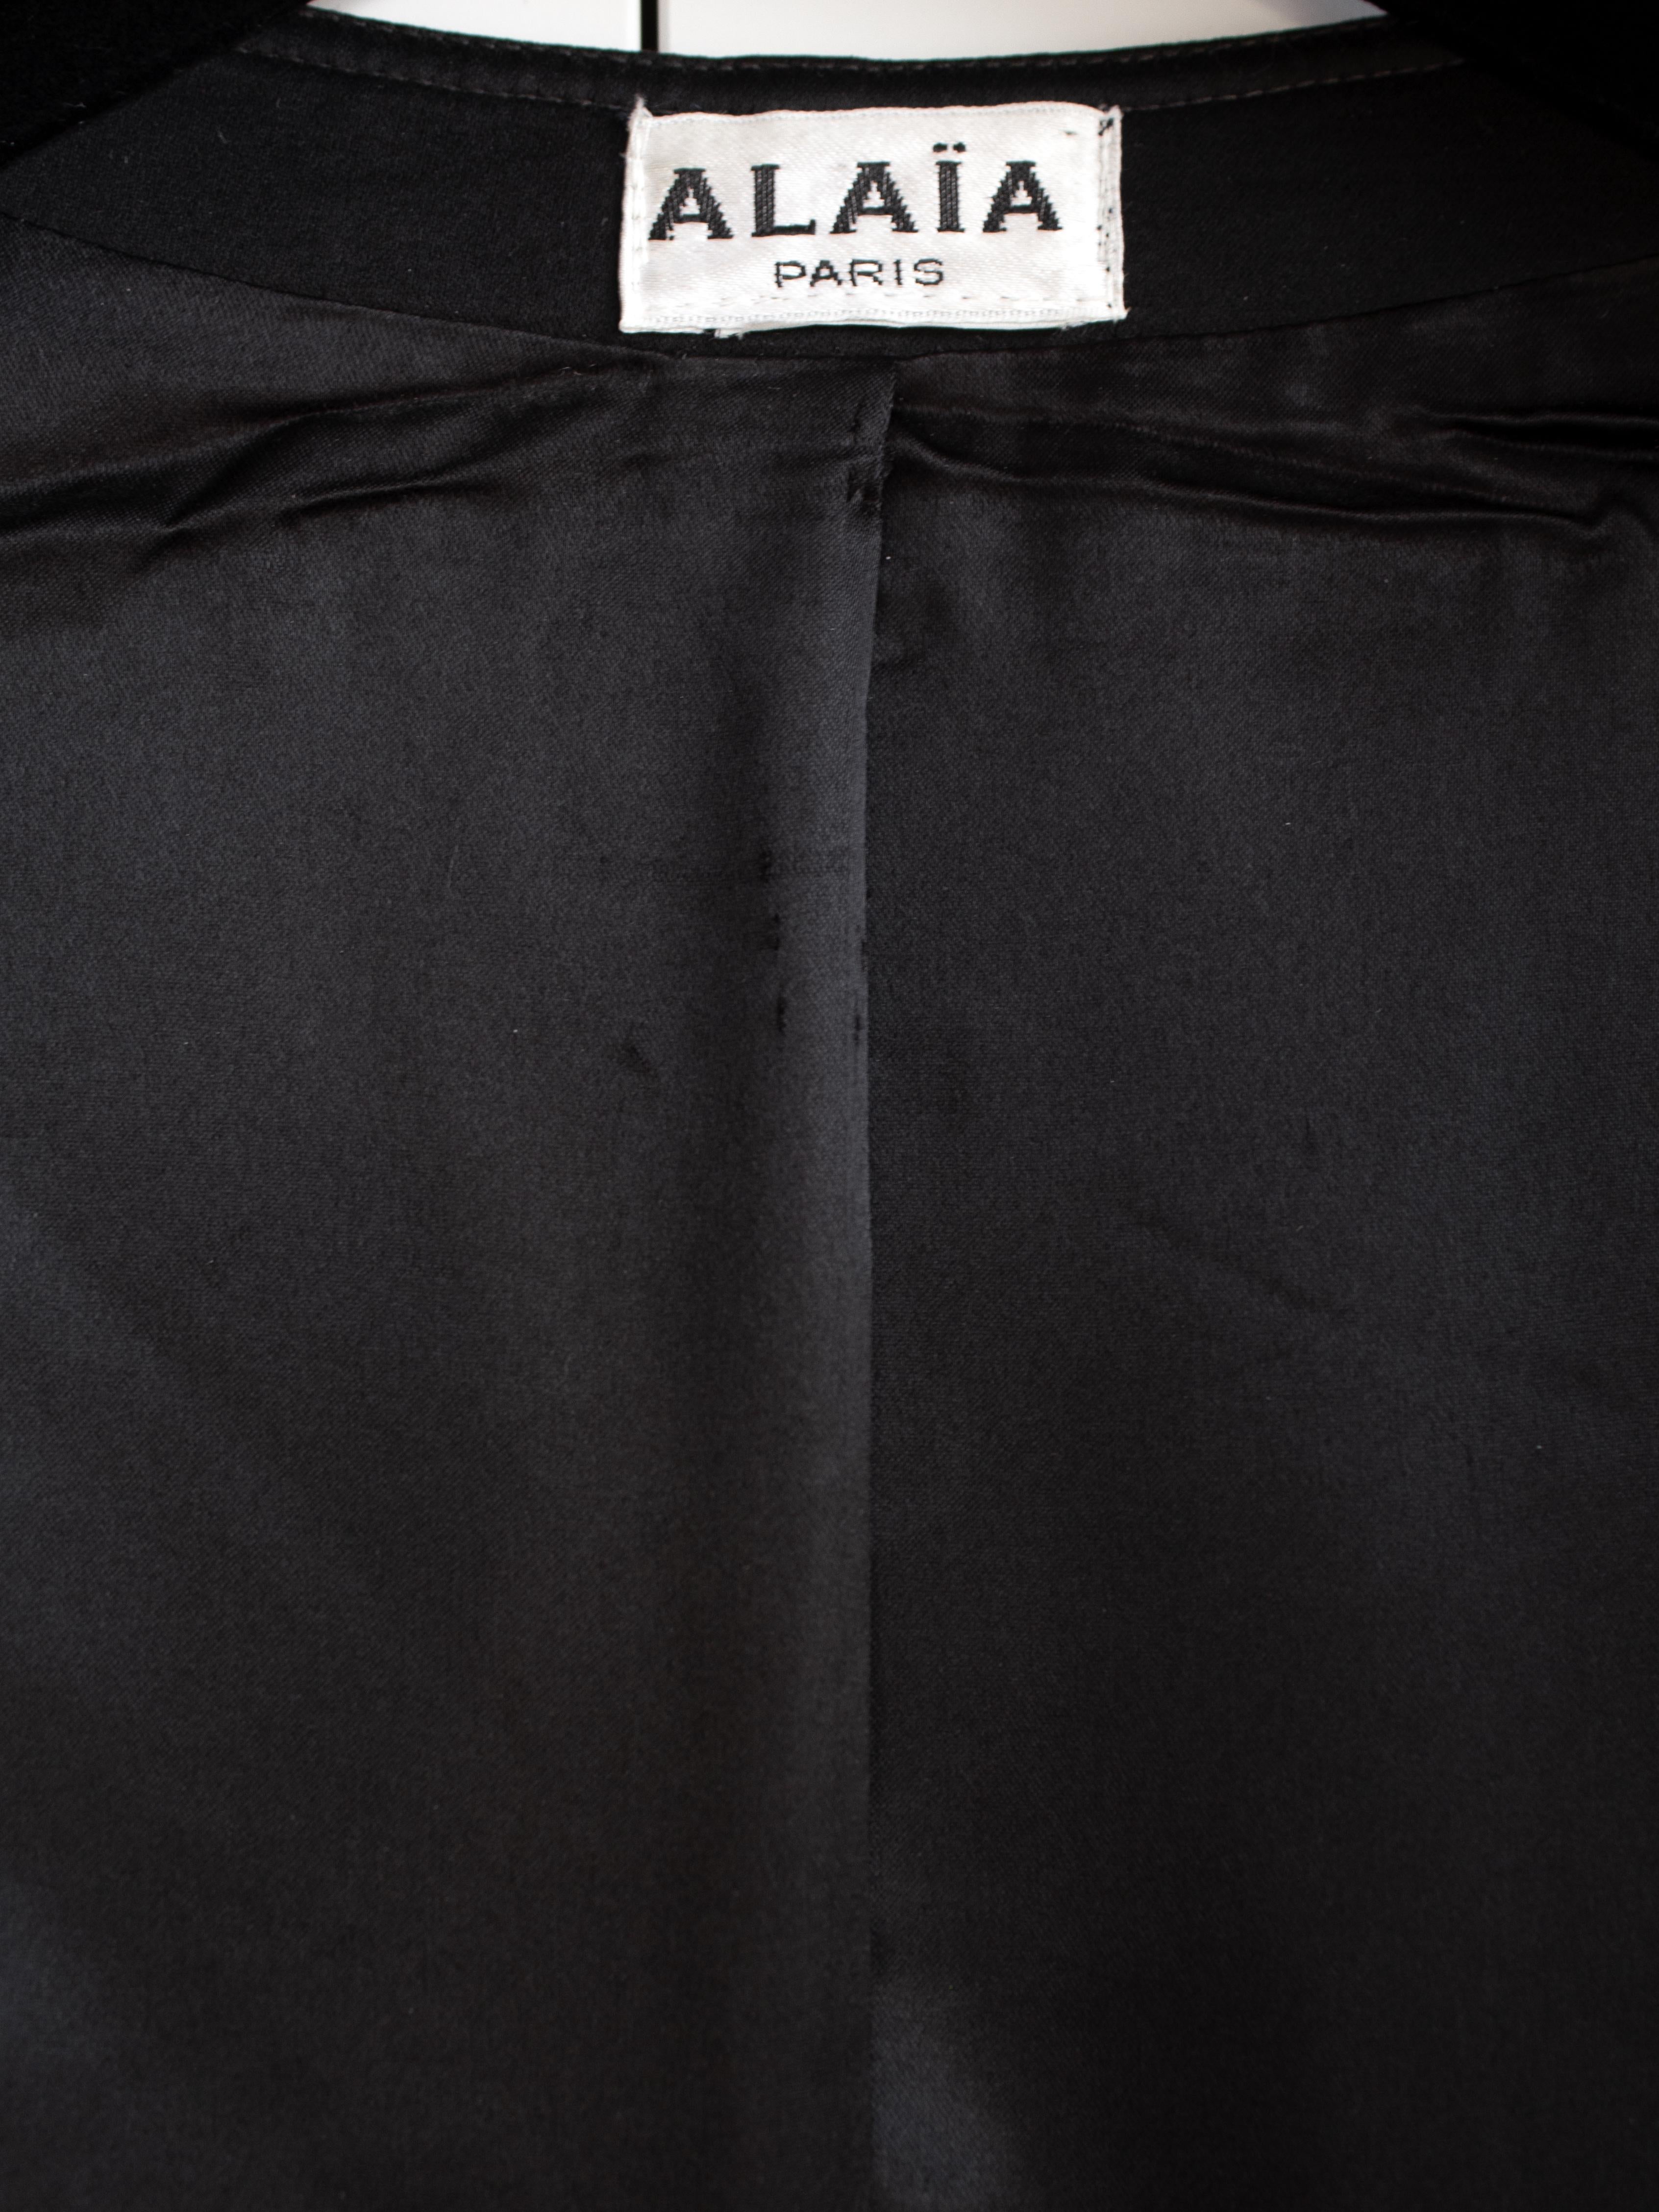 Rare Azzedine Alaia Vintage S/S 1992 Black Corset Bustier Jacket For Sale 11